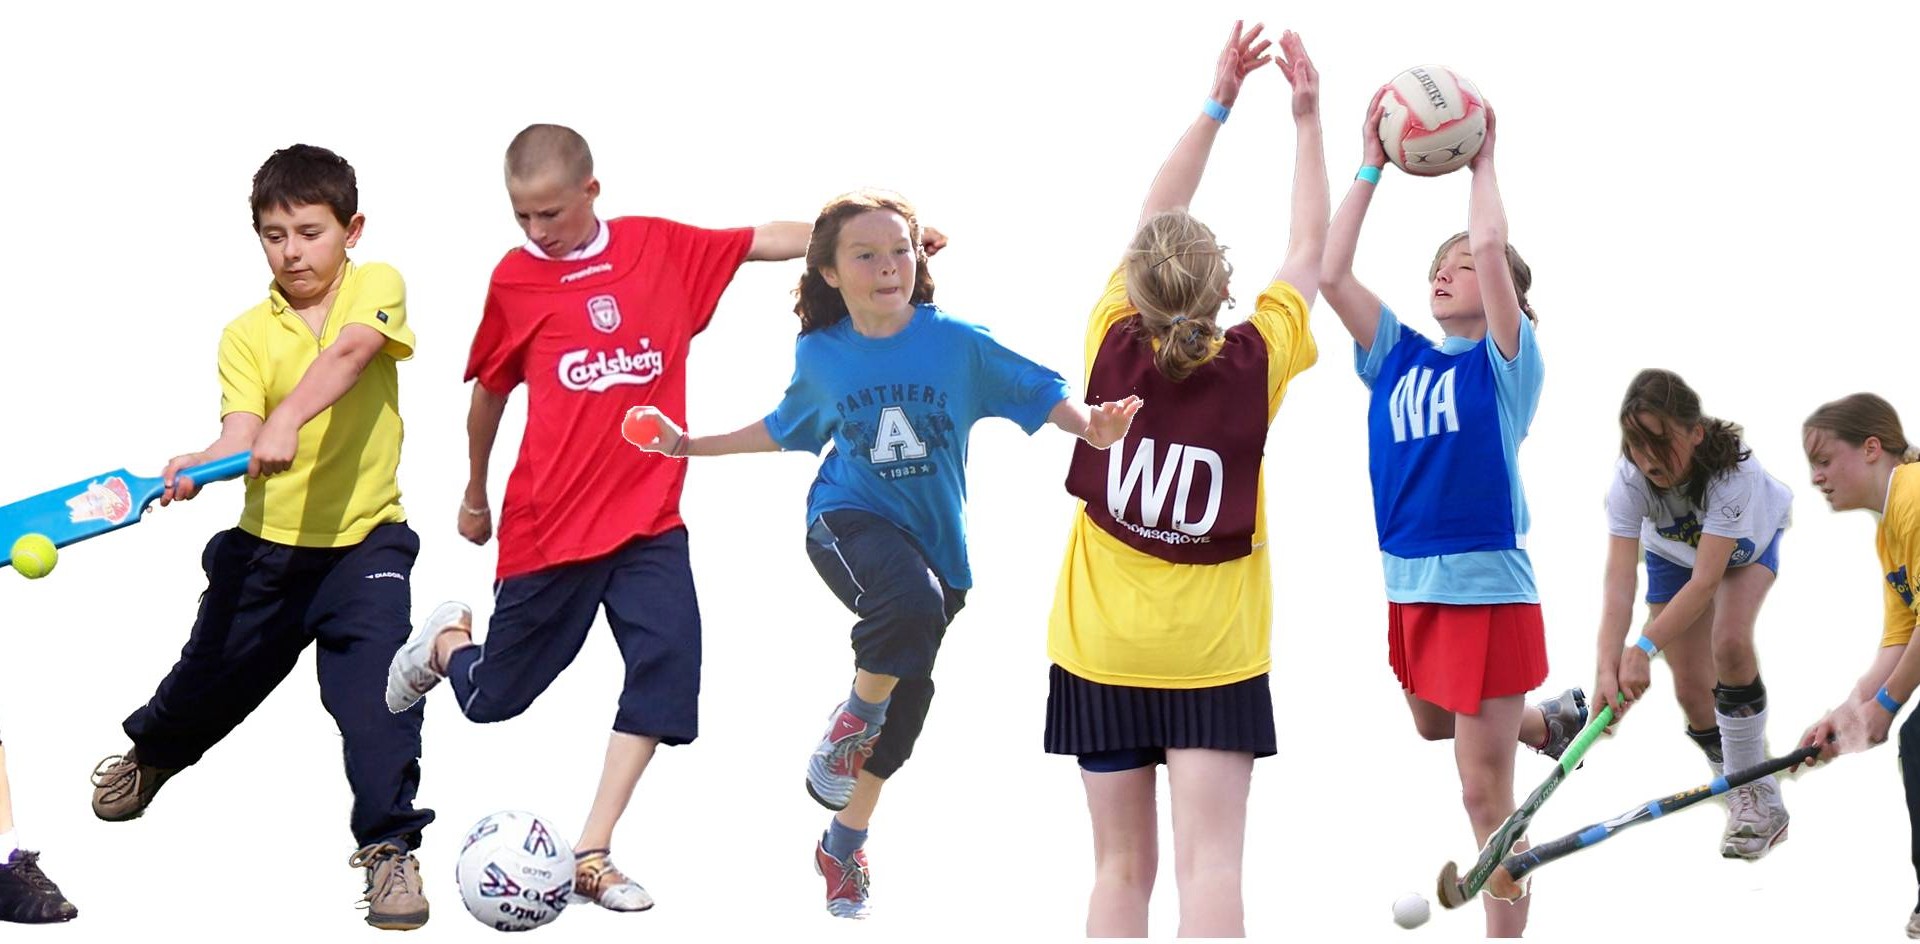 Физическая культура в жизни детей. Спортивные дети. Занятие физкультурой и спортом. Дети спортсмены. Занятие спортом дети.